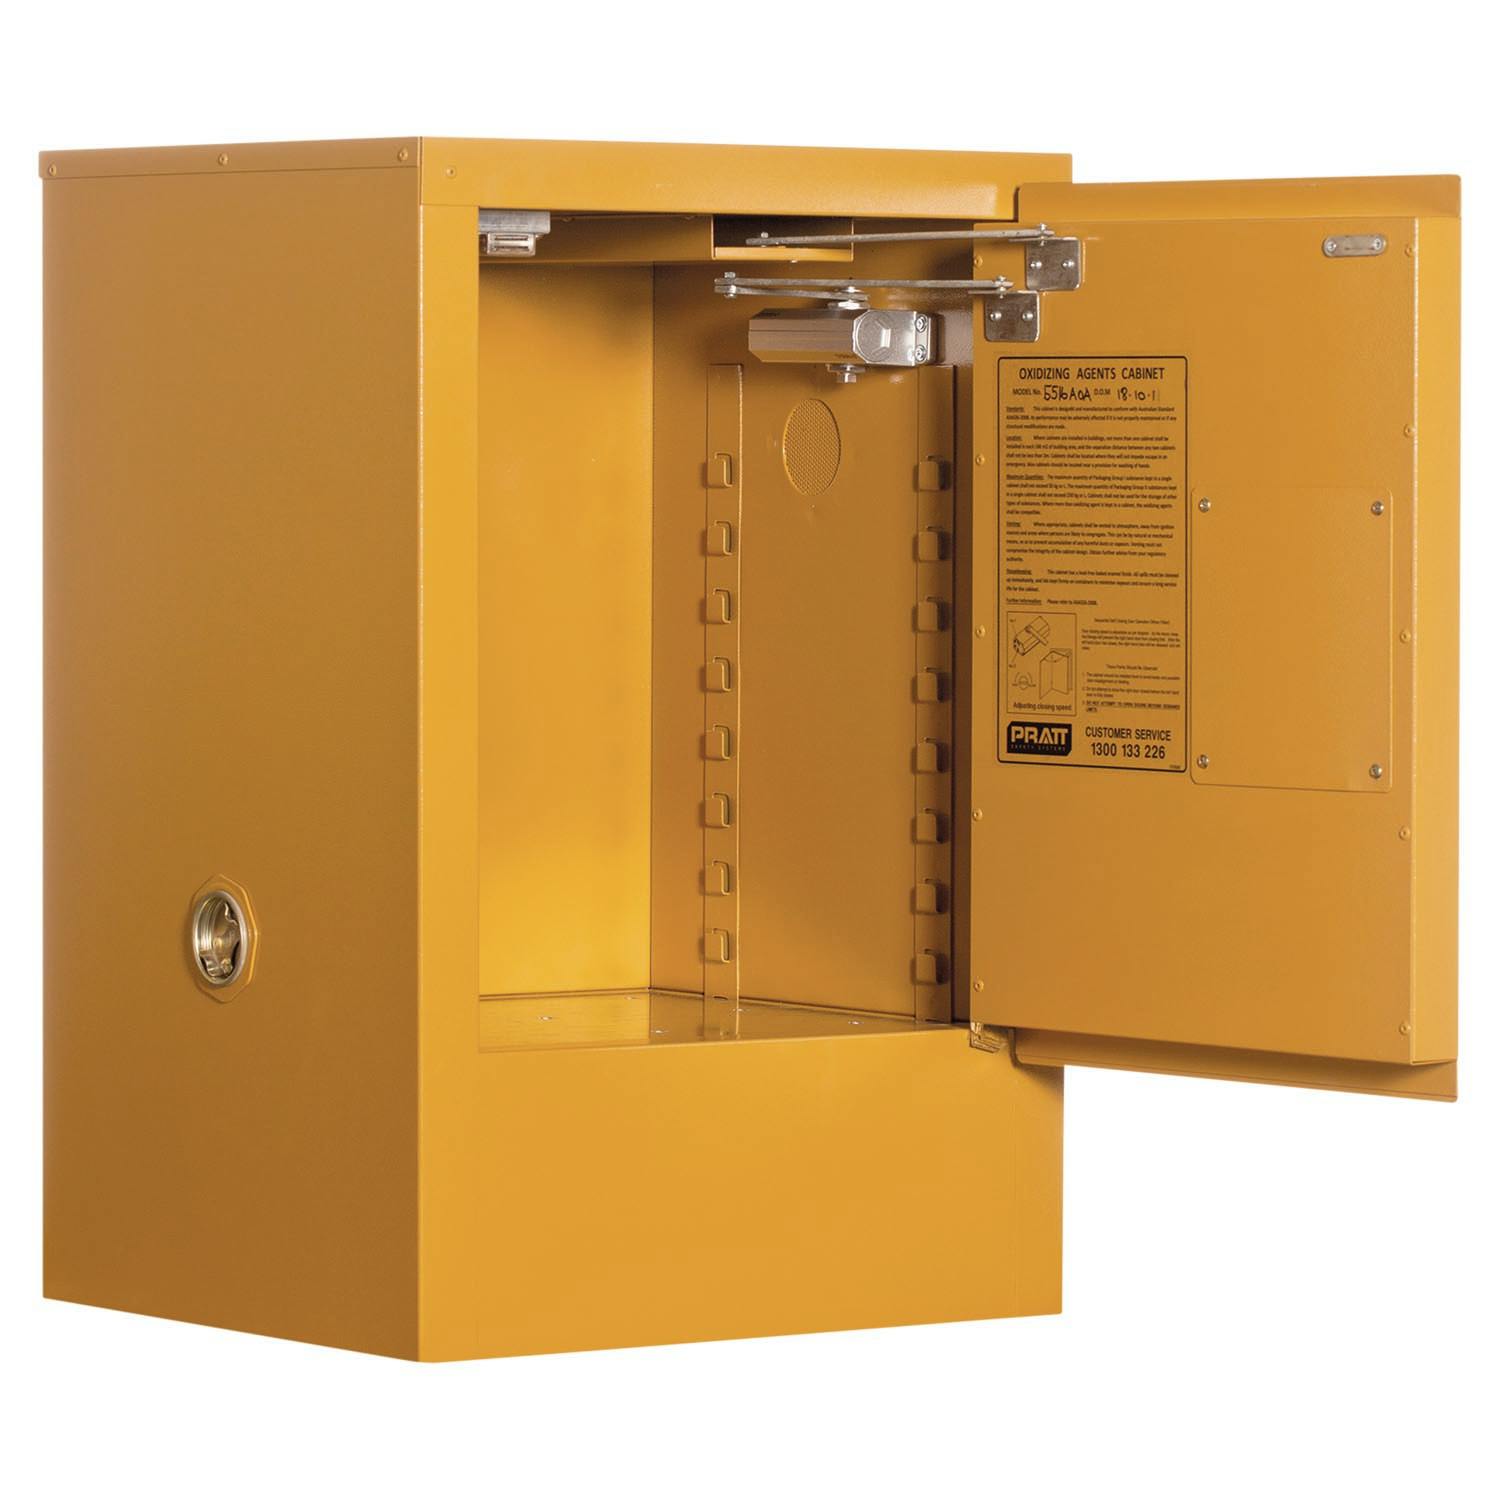 Pratt Class 4 Dangerous Goods Storage Cabinet: 30L - 1 Door - 1 Shelf